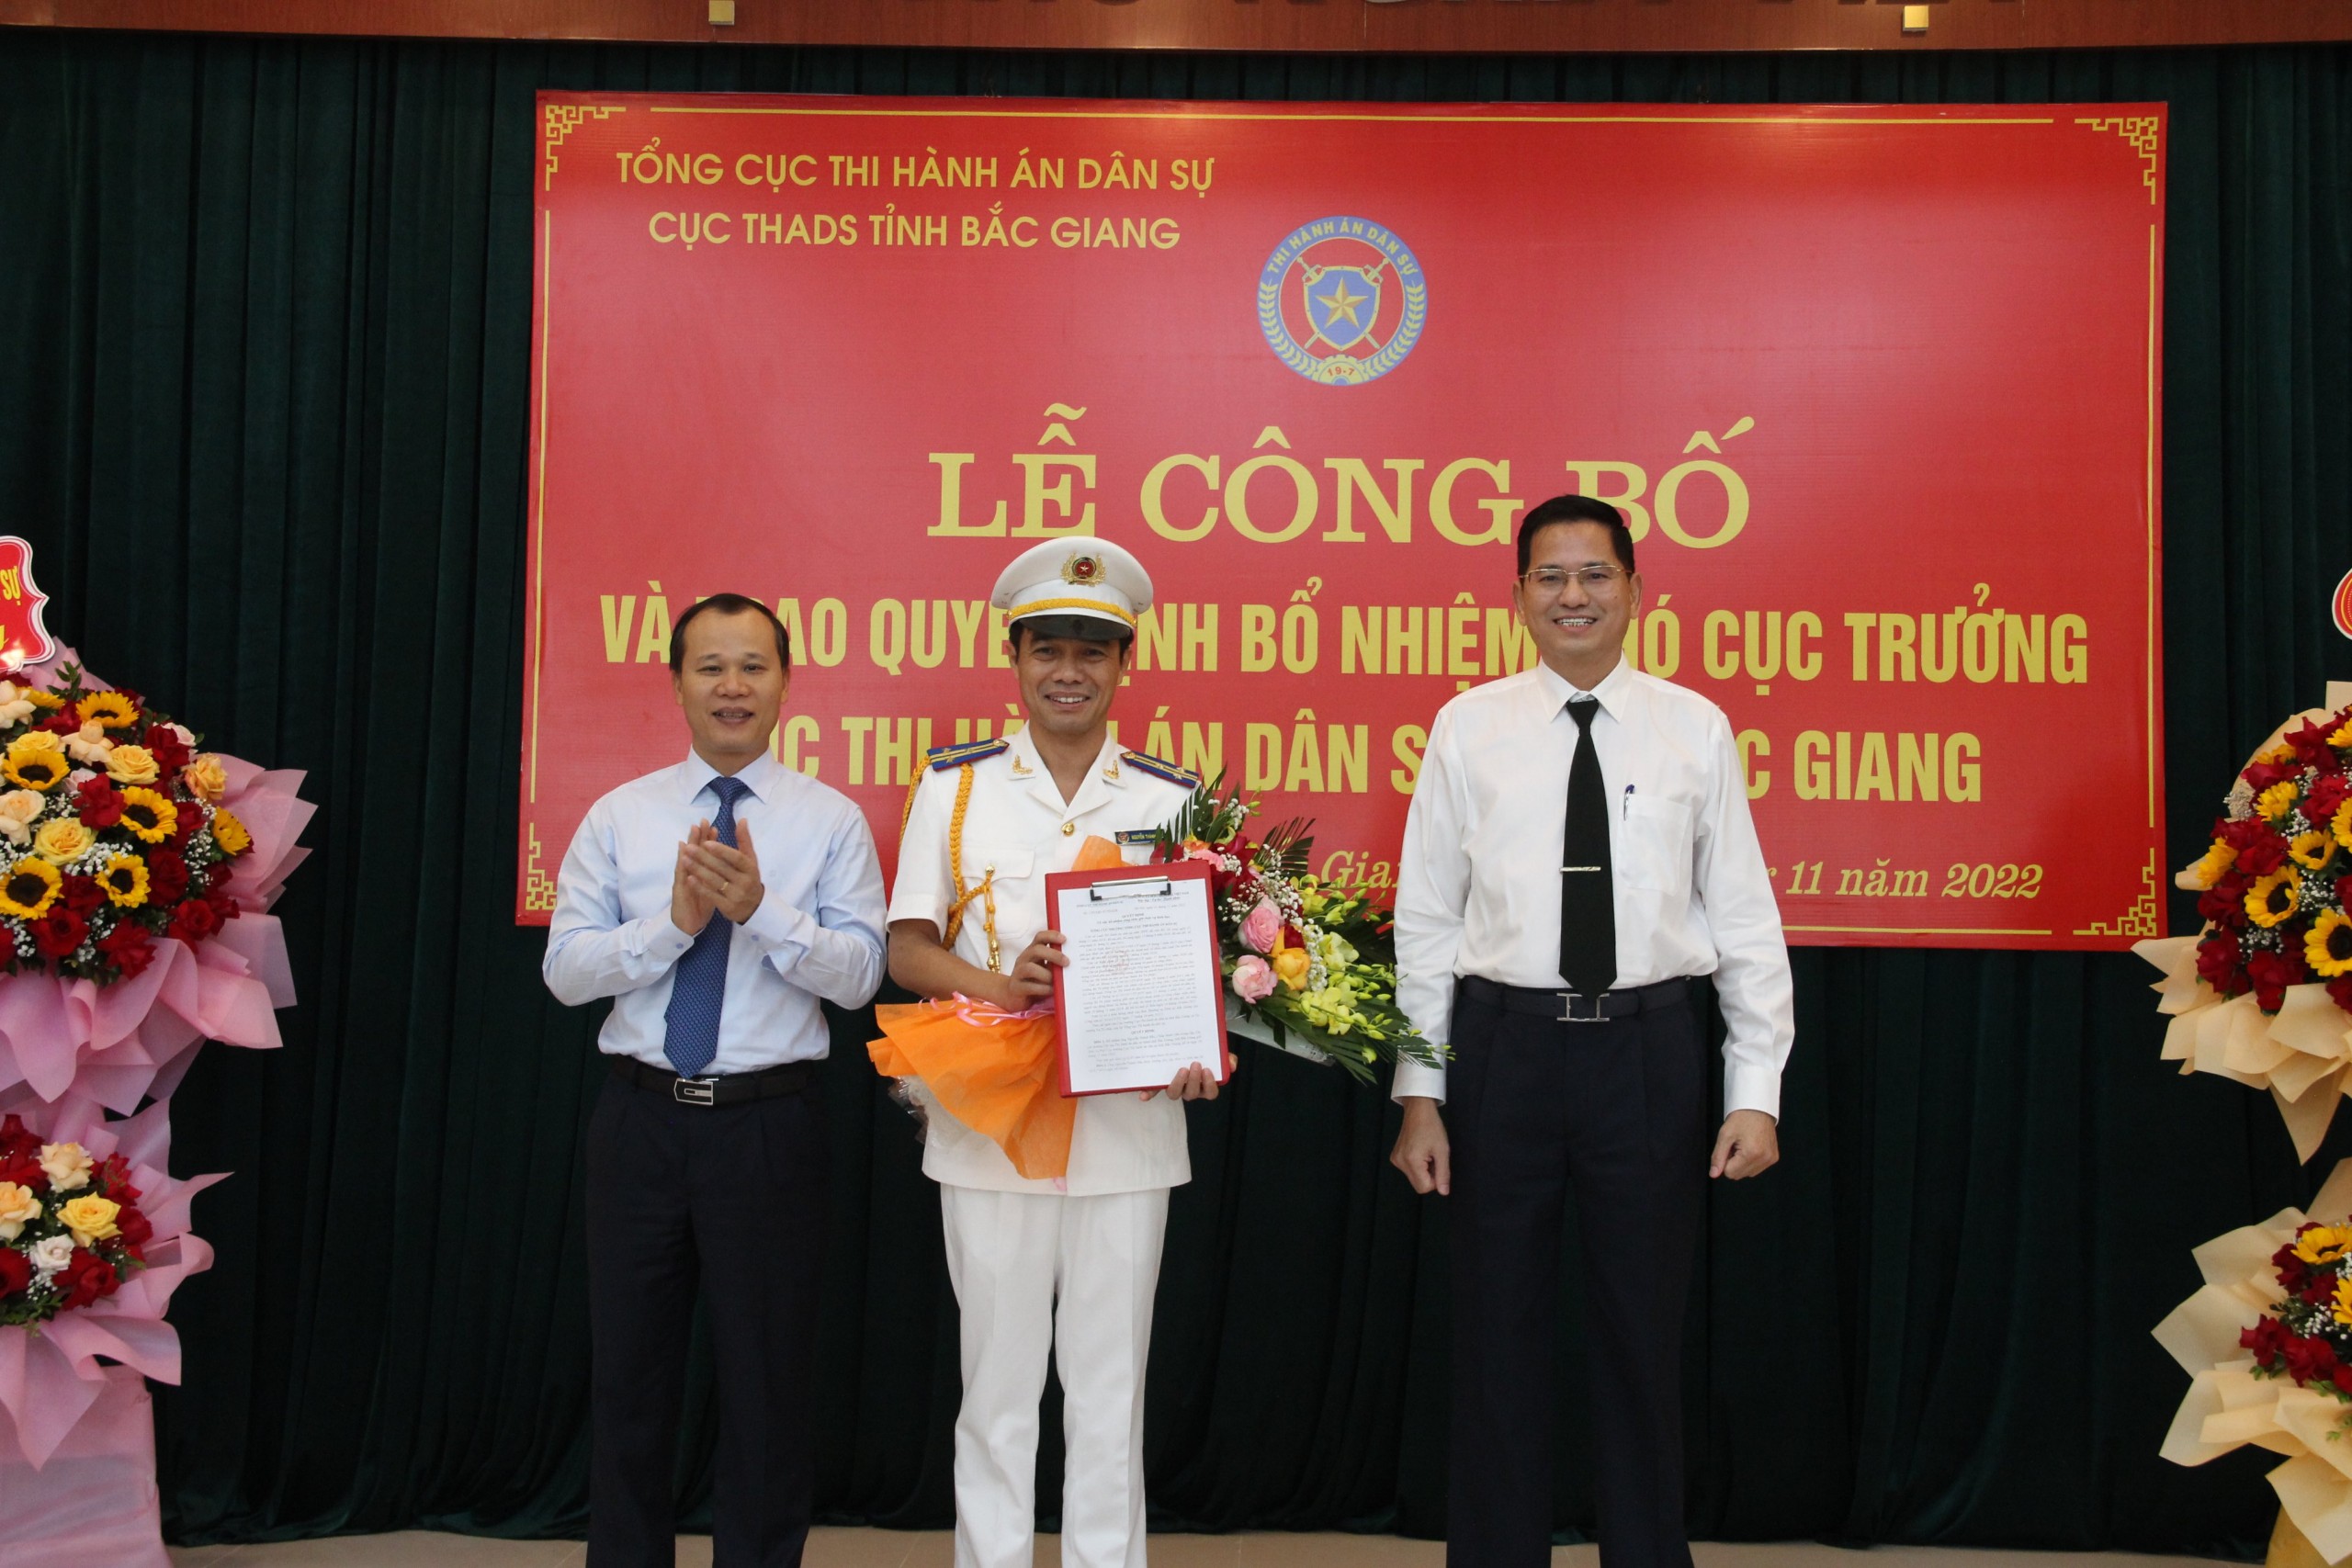 Cục THADS tỉnh Bắc Giang tổ chức Lễ công bố và trao Quyết định bổ nhiệm Phó Cục trưởng